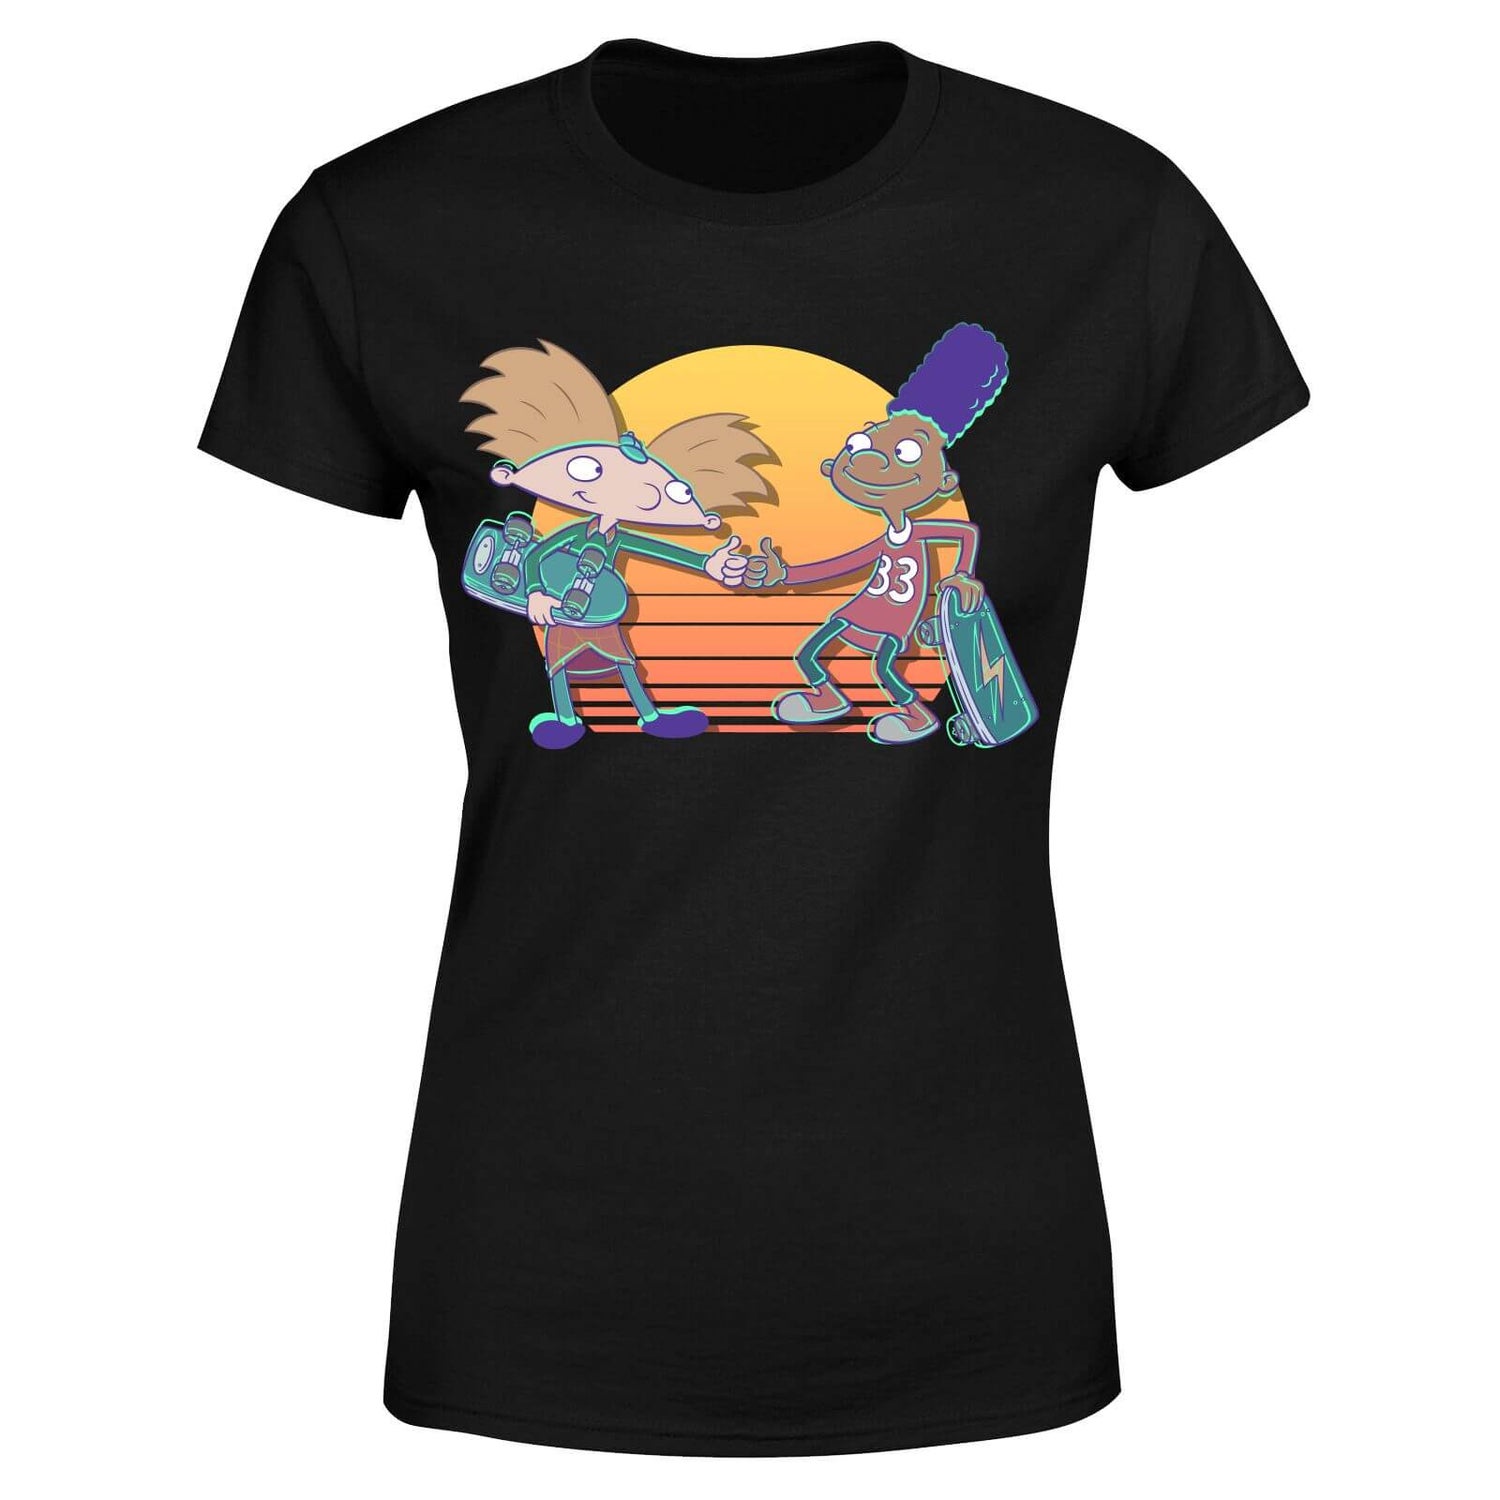 Nickelodeon Hey Arnold Buddies Women's T-Shirt - Black